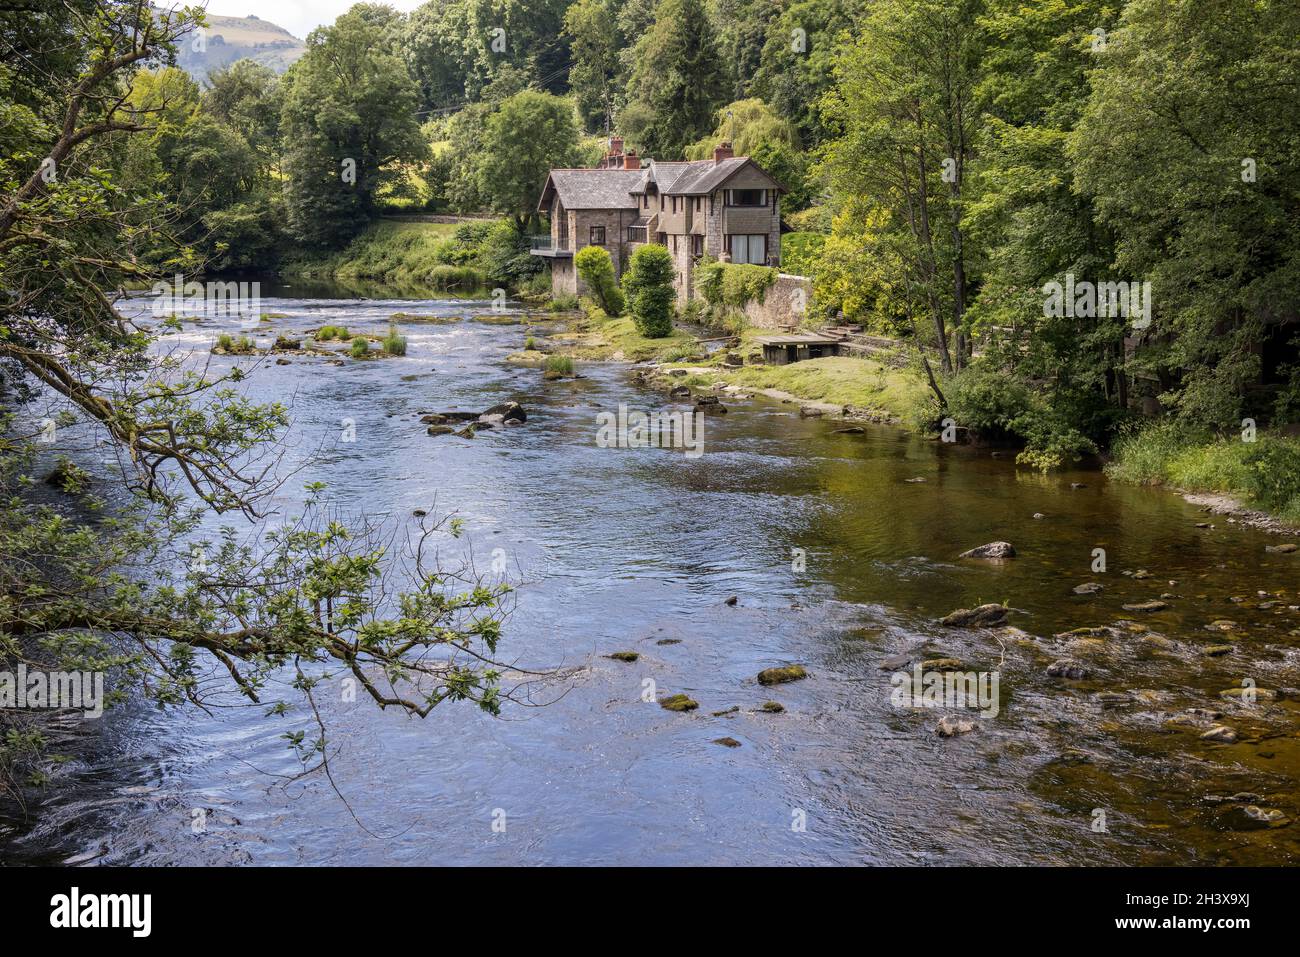 FRONCYSYLLTE, WREXHAM, GALES - JULIO 15 : Casa junto al río Dee cerca del acueducto Pontcysilte, Froncysilte, Wrexham, Gales, U. Foto de stock